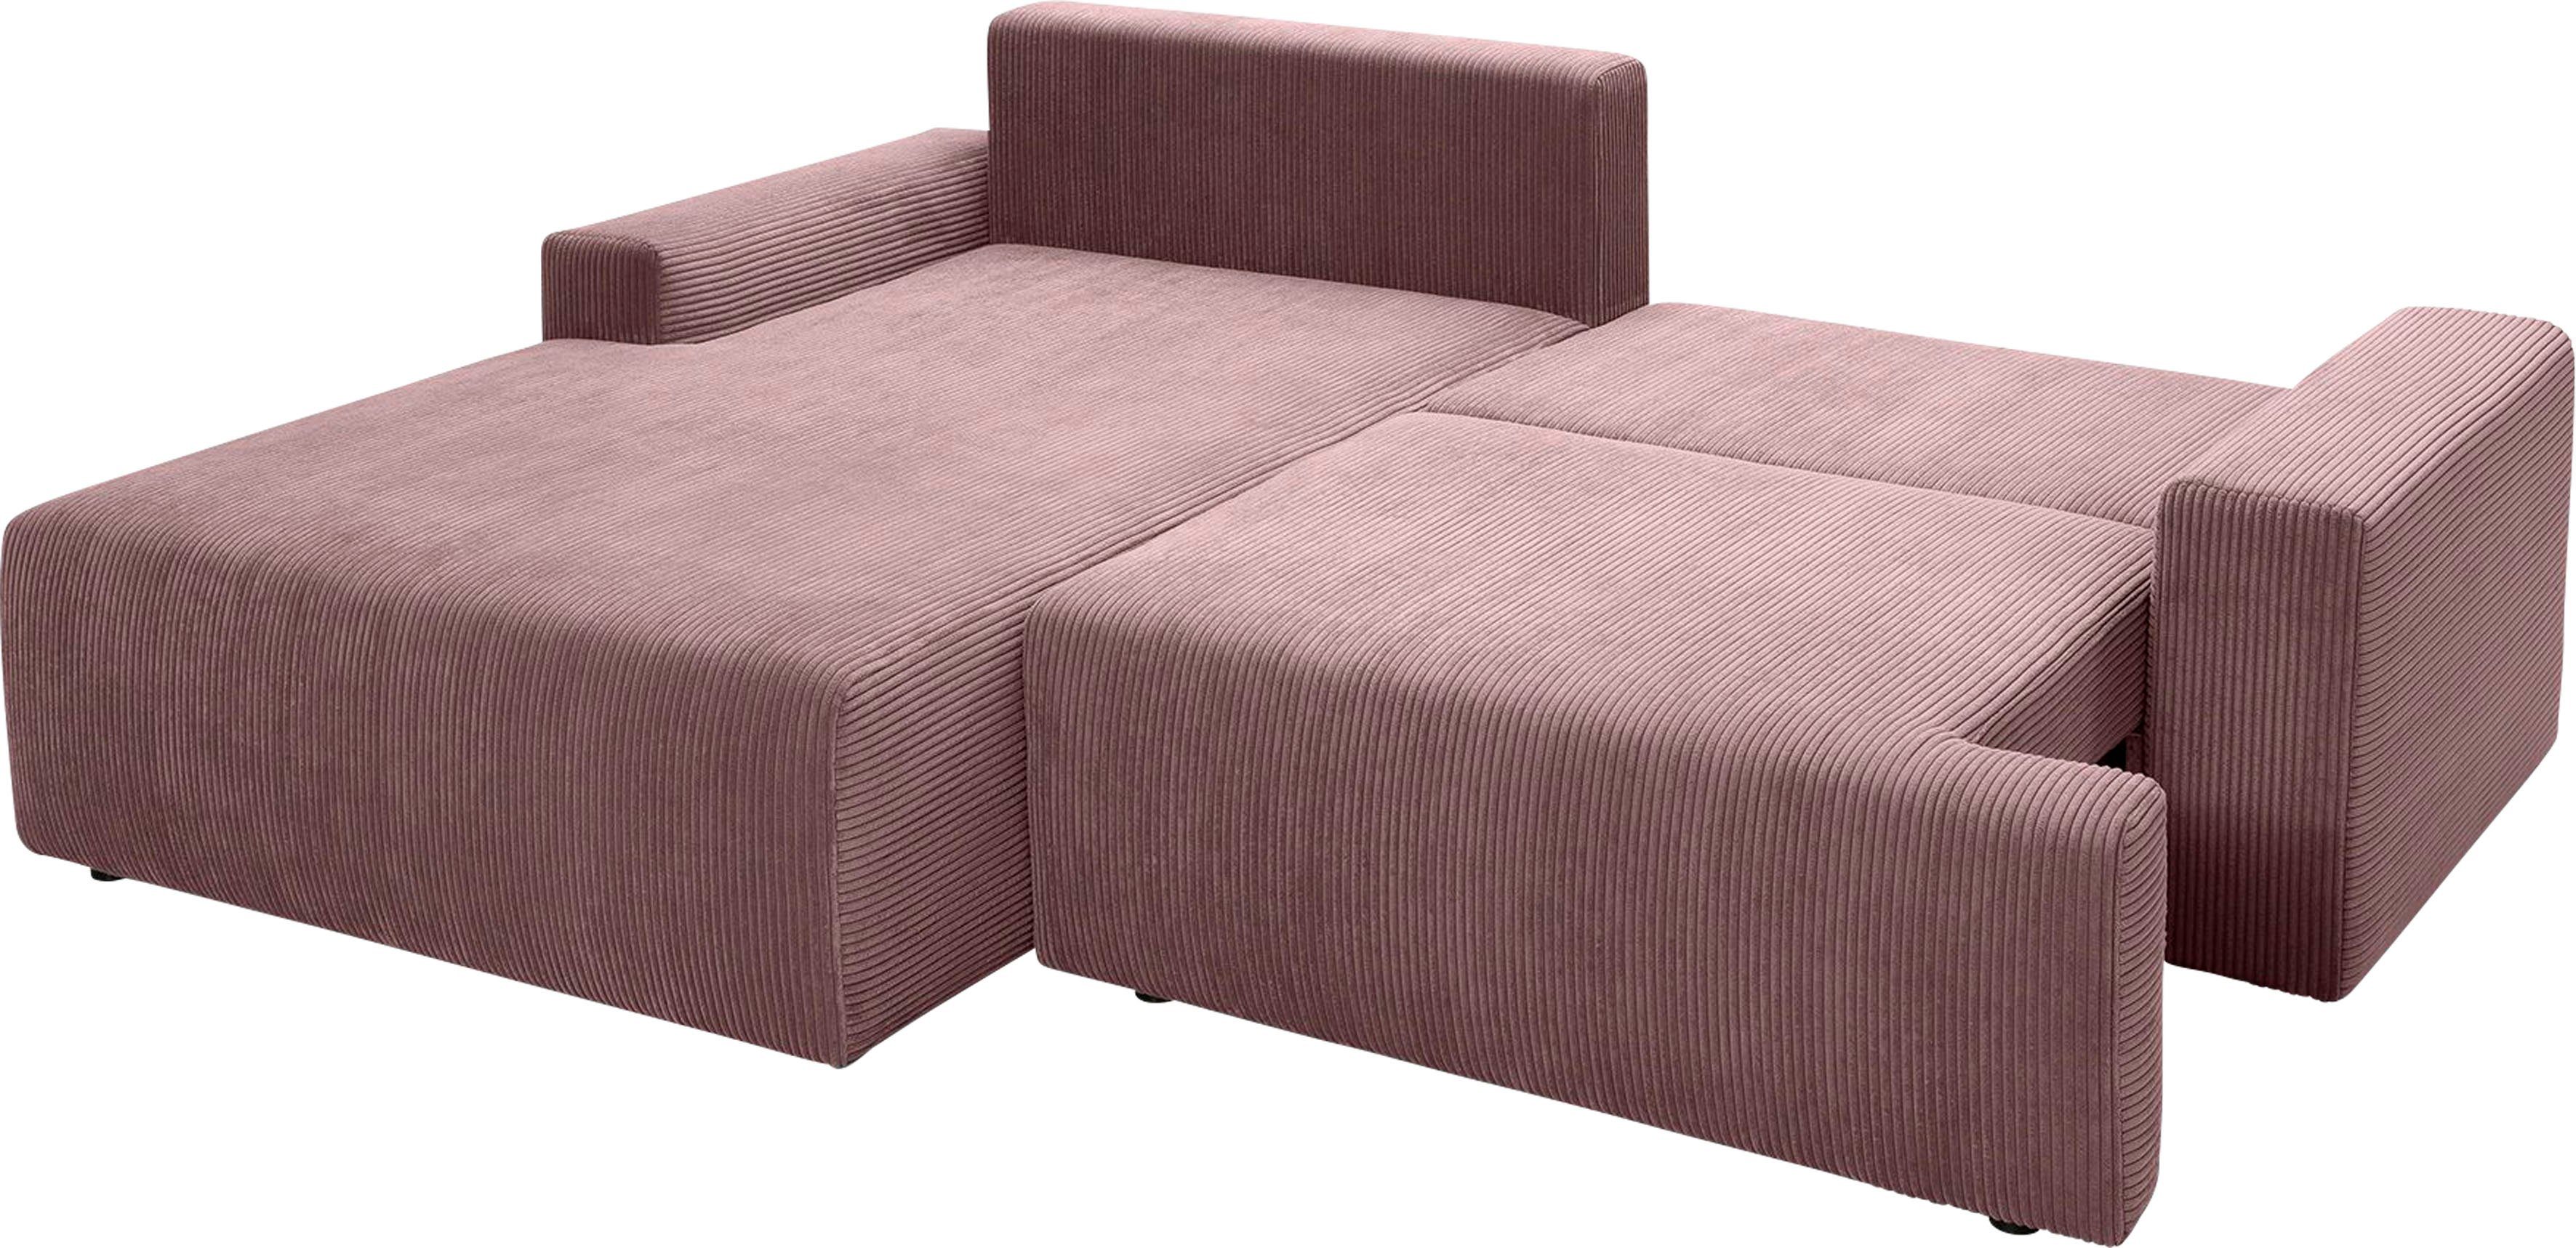 inklusive sofa exxpo verschiedenen in Ecksofa fashion und Bettfunktion Cord-Farben Orinoko, rose Bettkasten -